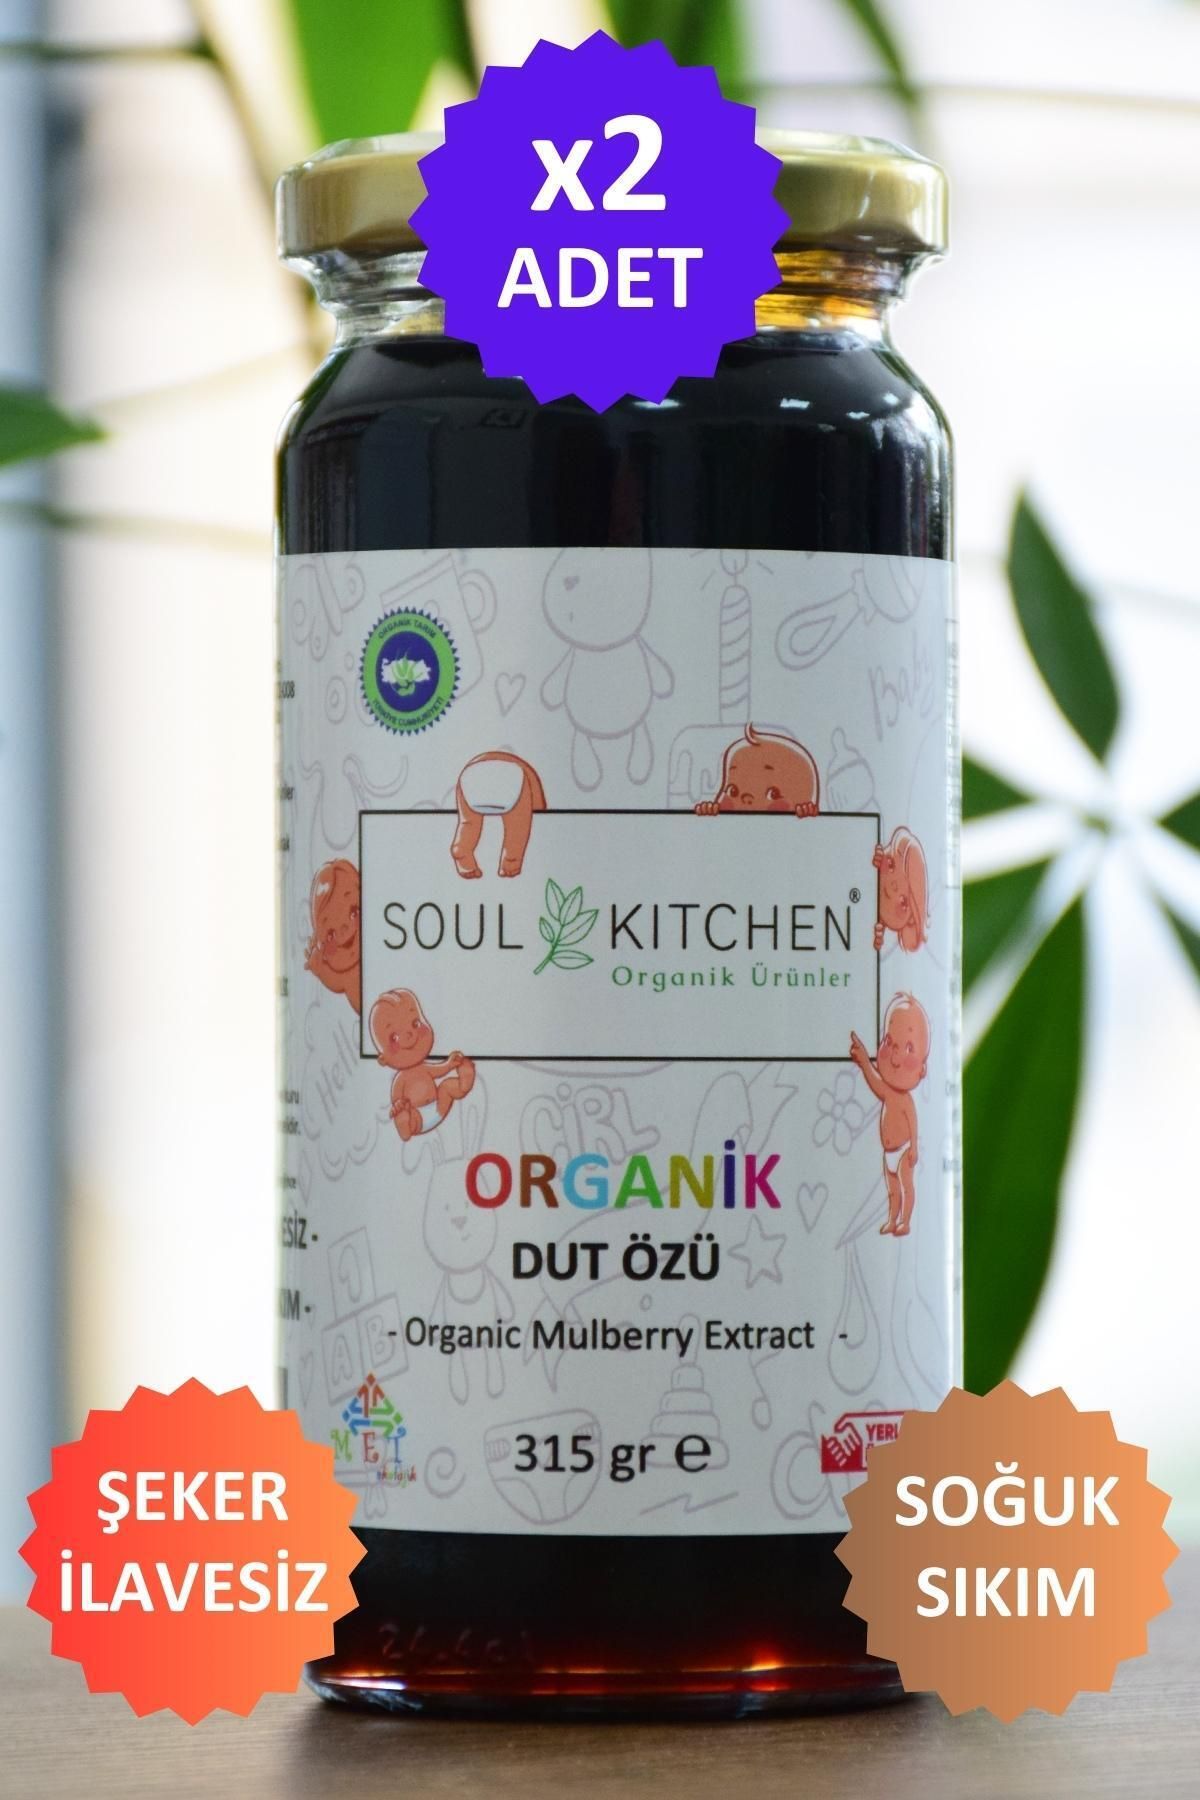 Soul Kitchen Organik Ürünler Organik Bebek Dut Özü 315gr (Soğuk Sıkım) (Şeker İlavesiz) 2'li eko paket